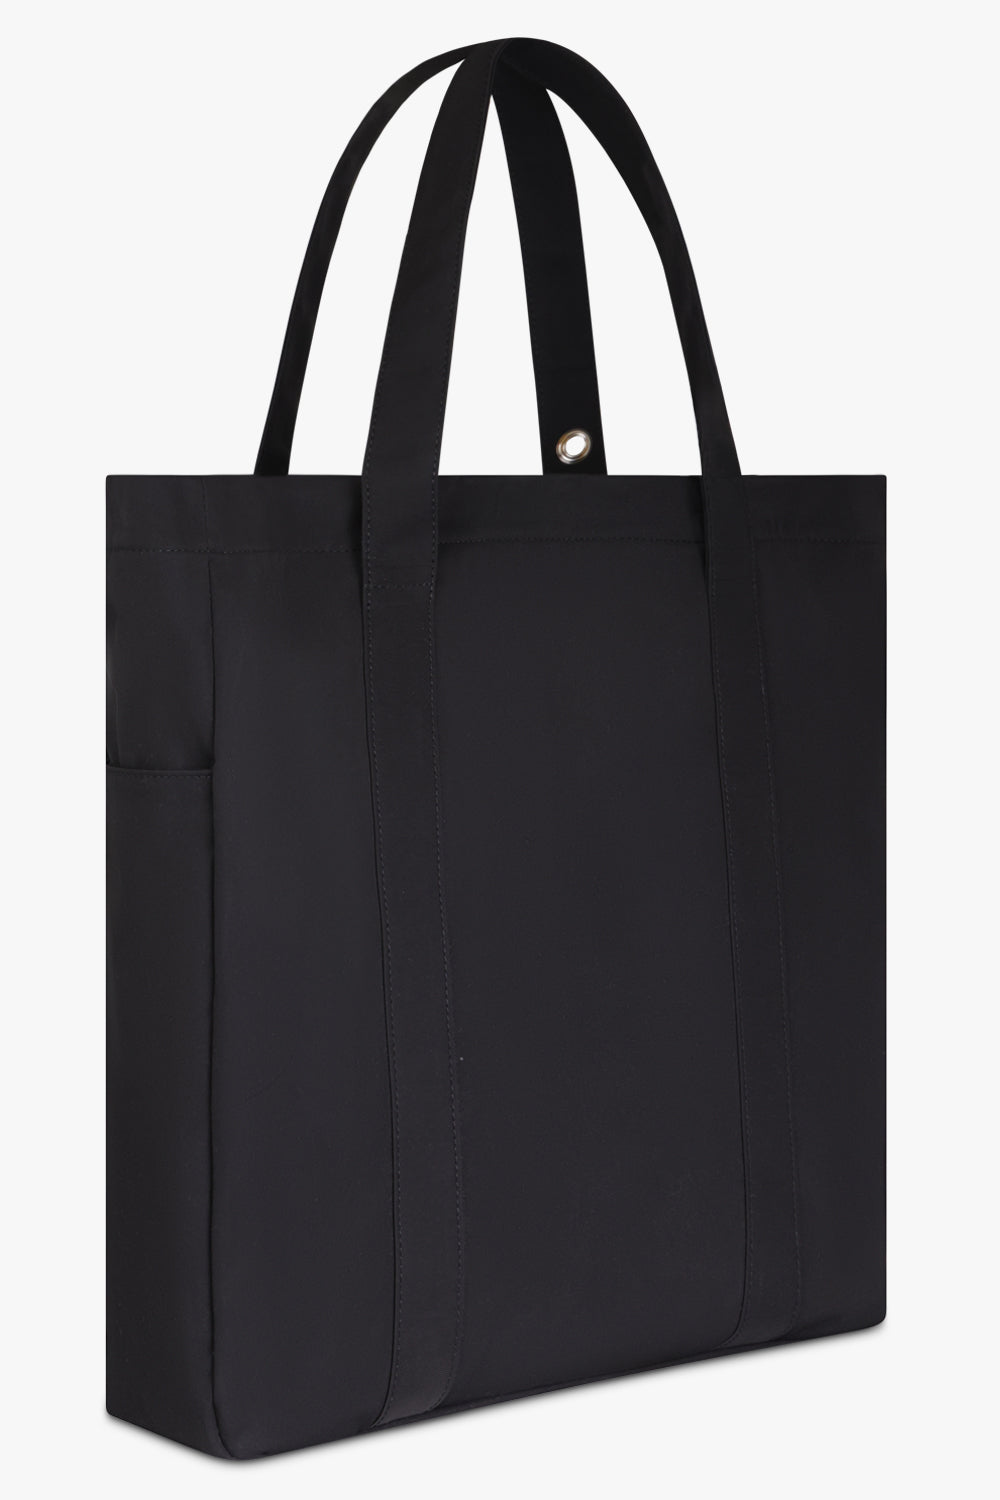 VIVIENNE WESTWOOD BAGS Black Murray Tote Bag| Black/Silver